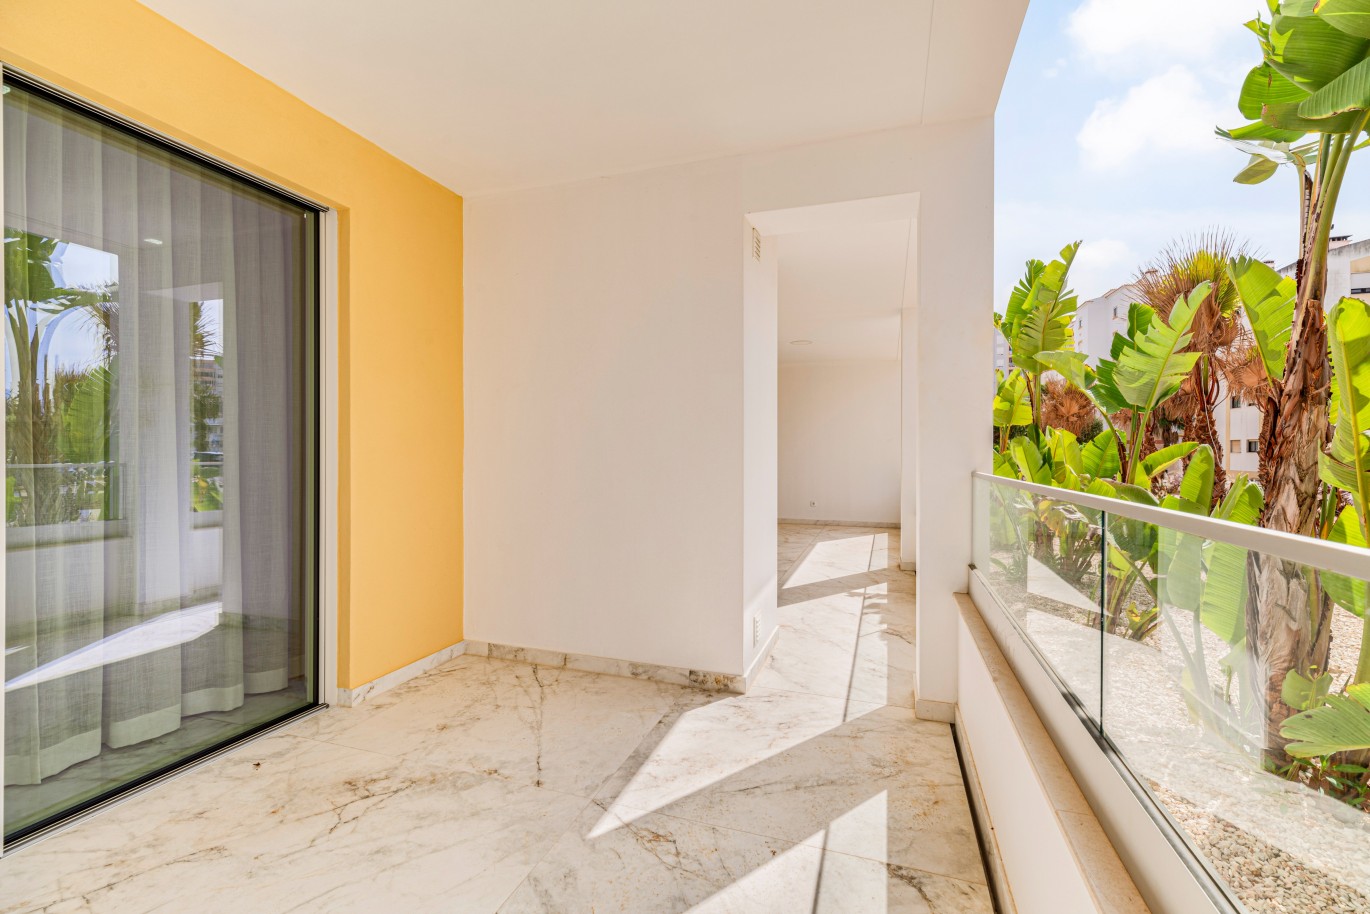 Verkauf einer Wohnung im Bau, mit Terrasse, Lagos, Algarve, Portugal_238137